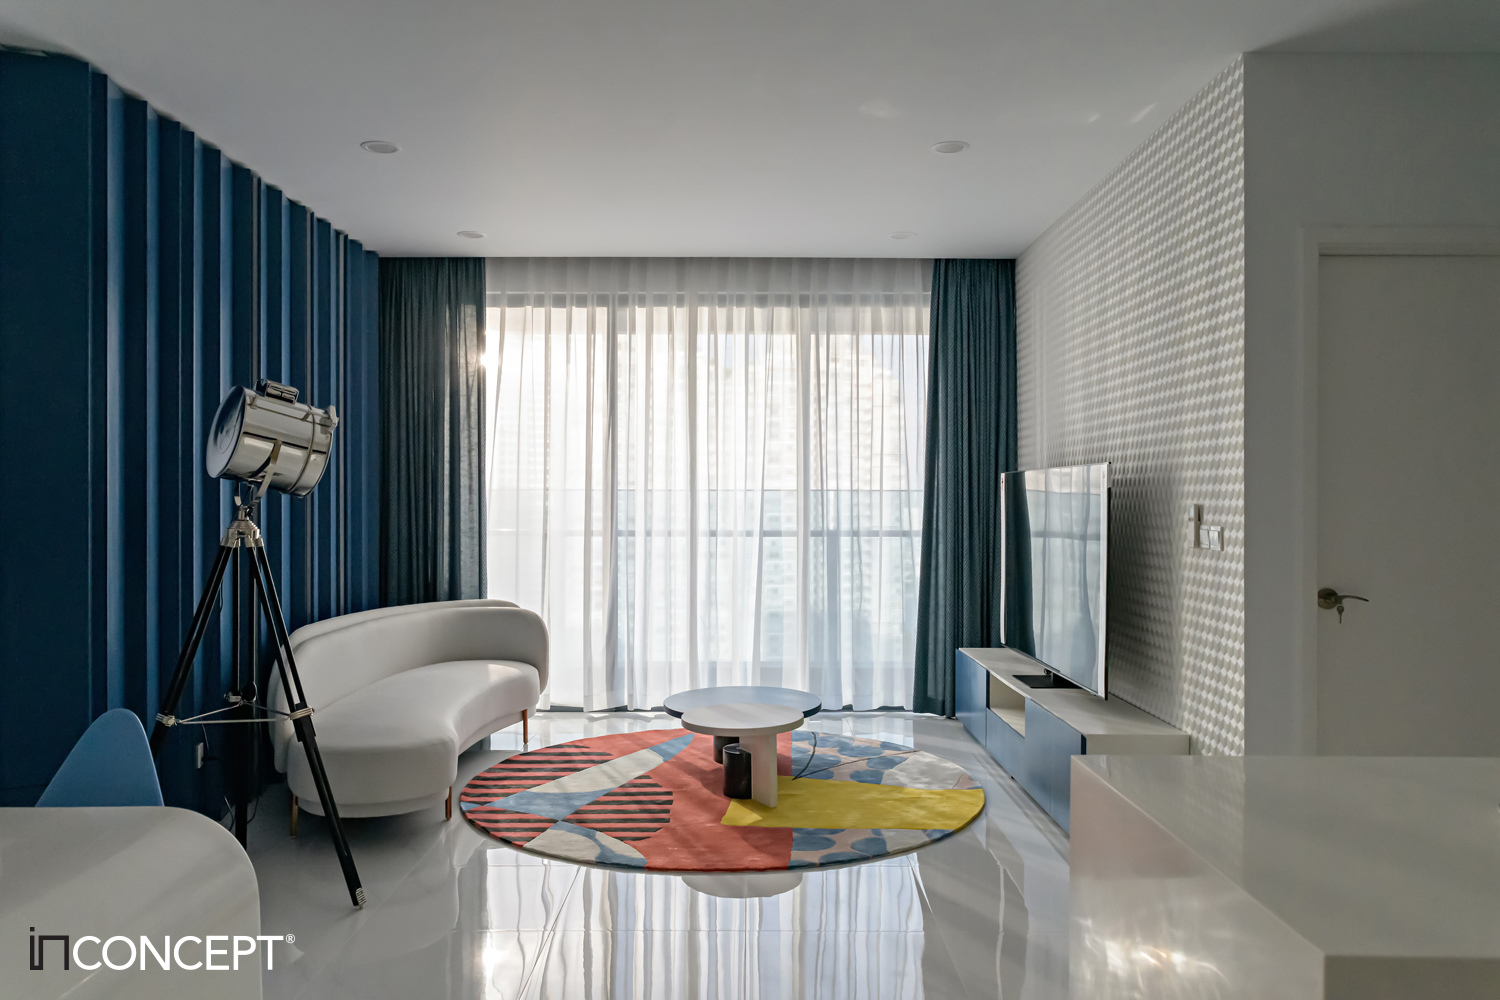 Thiết kế thi công nội thất biệt thự, resort, villa - Inconcept